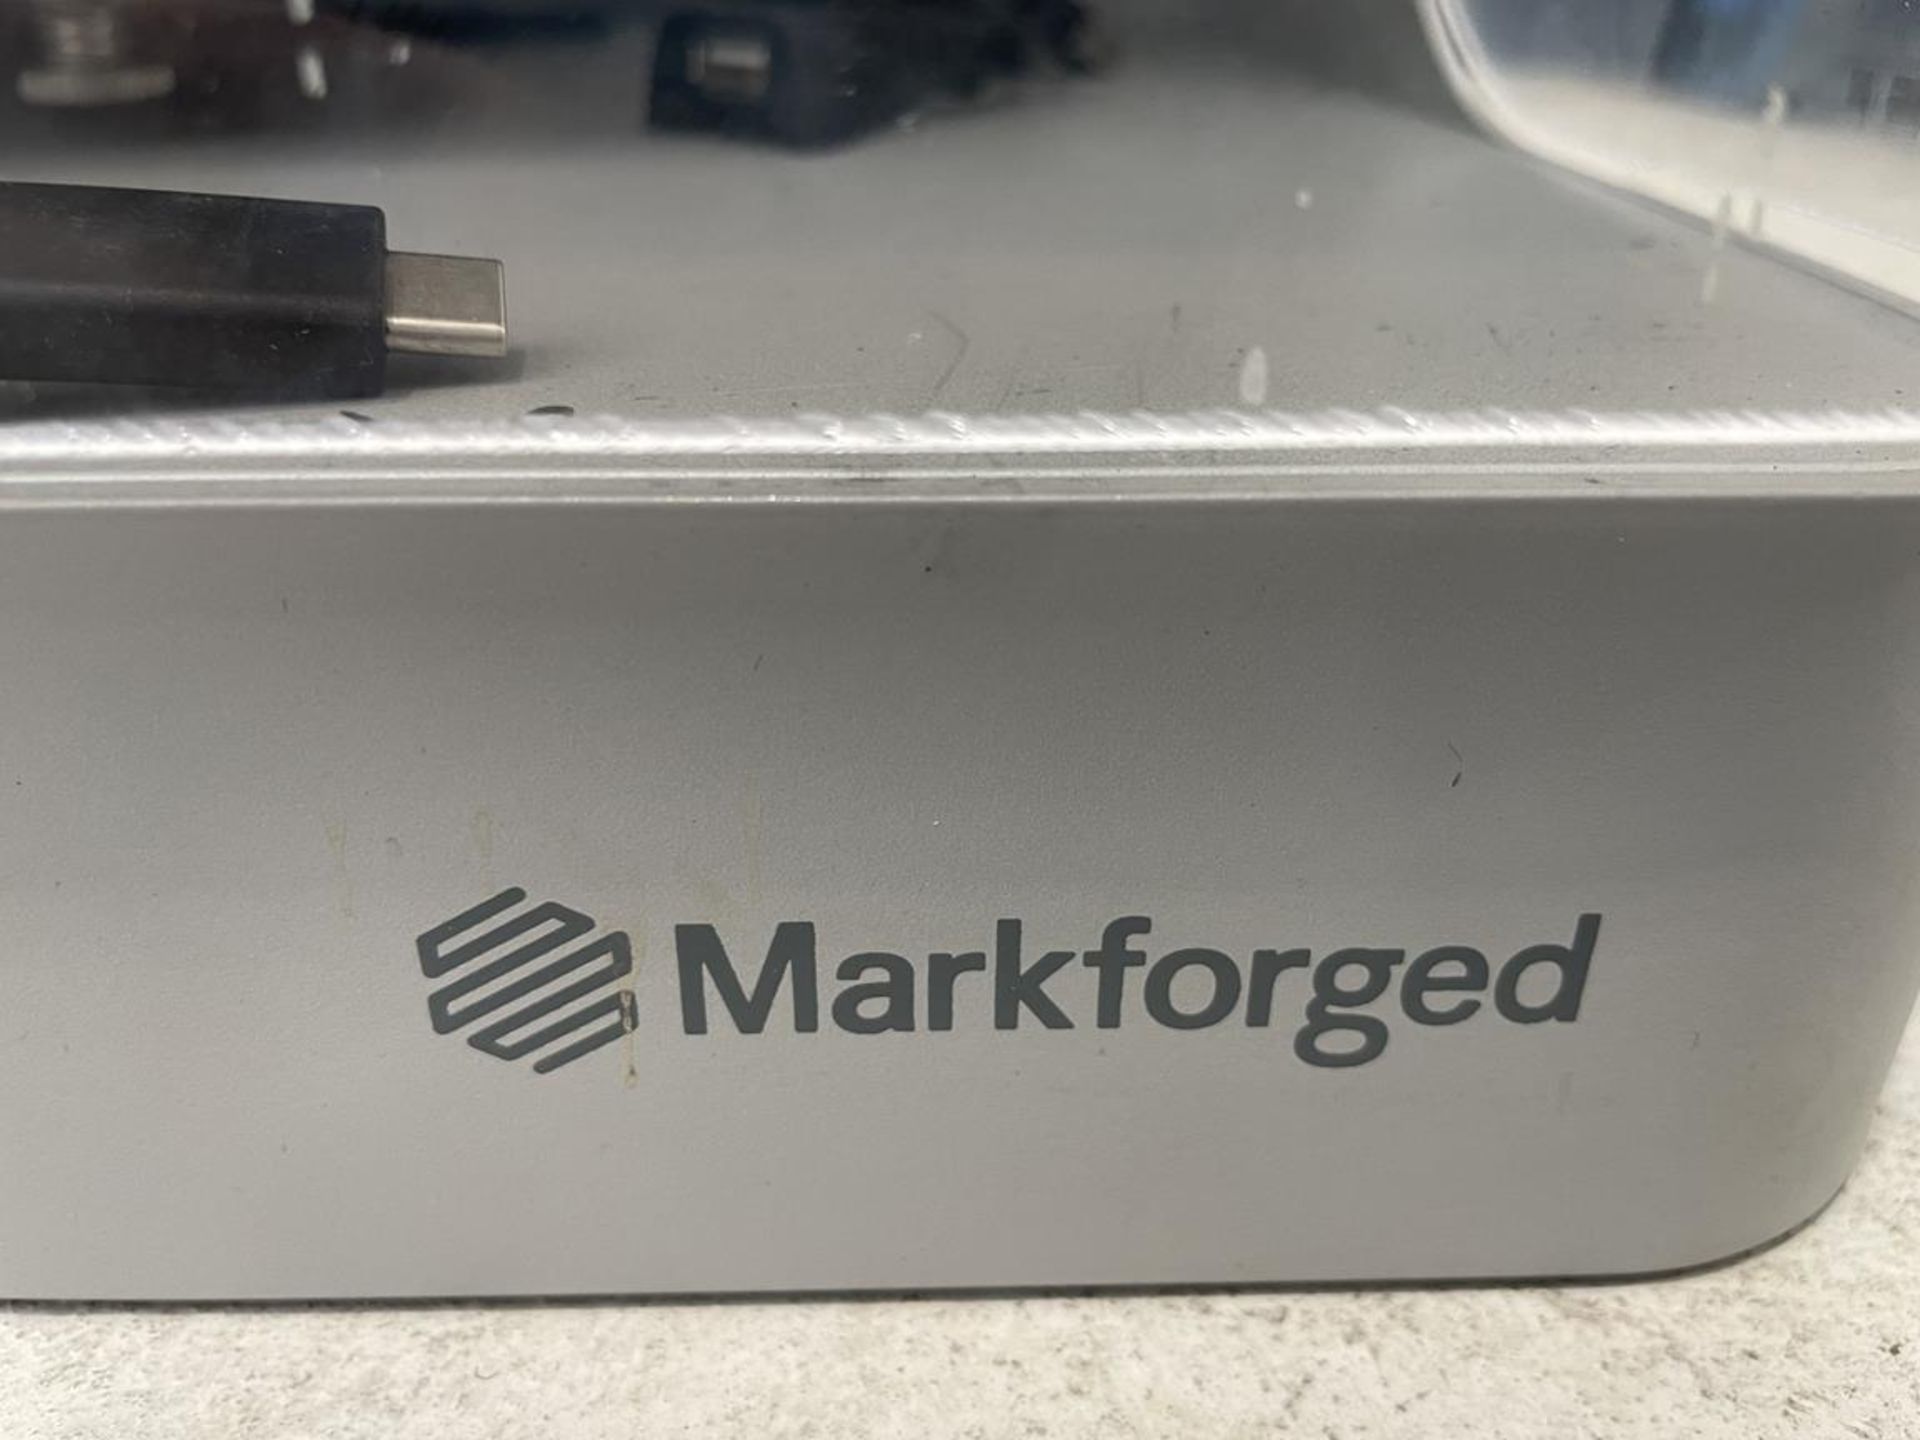 Markforged, Generation 2 desktop 3D printer - Image 3 of 5